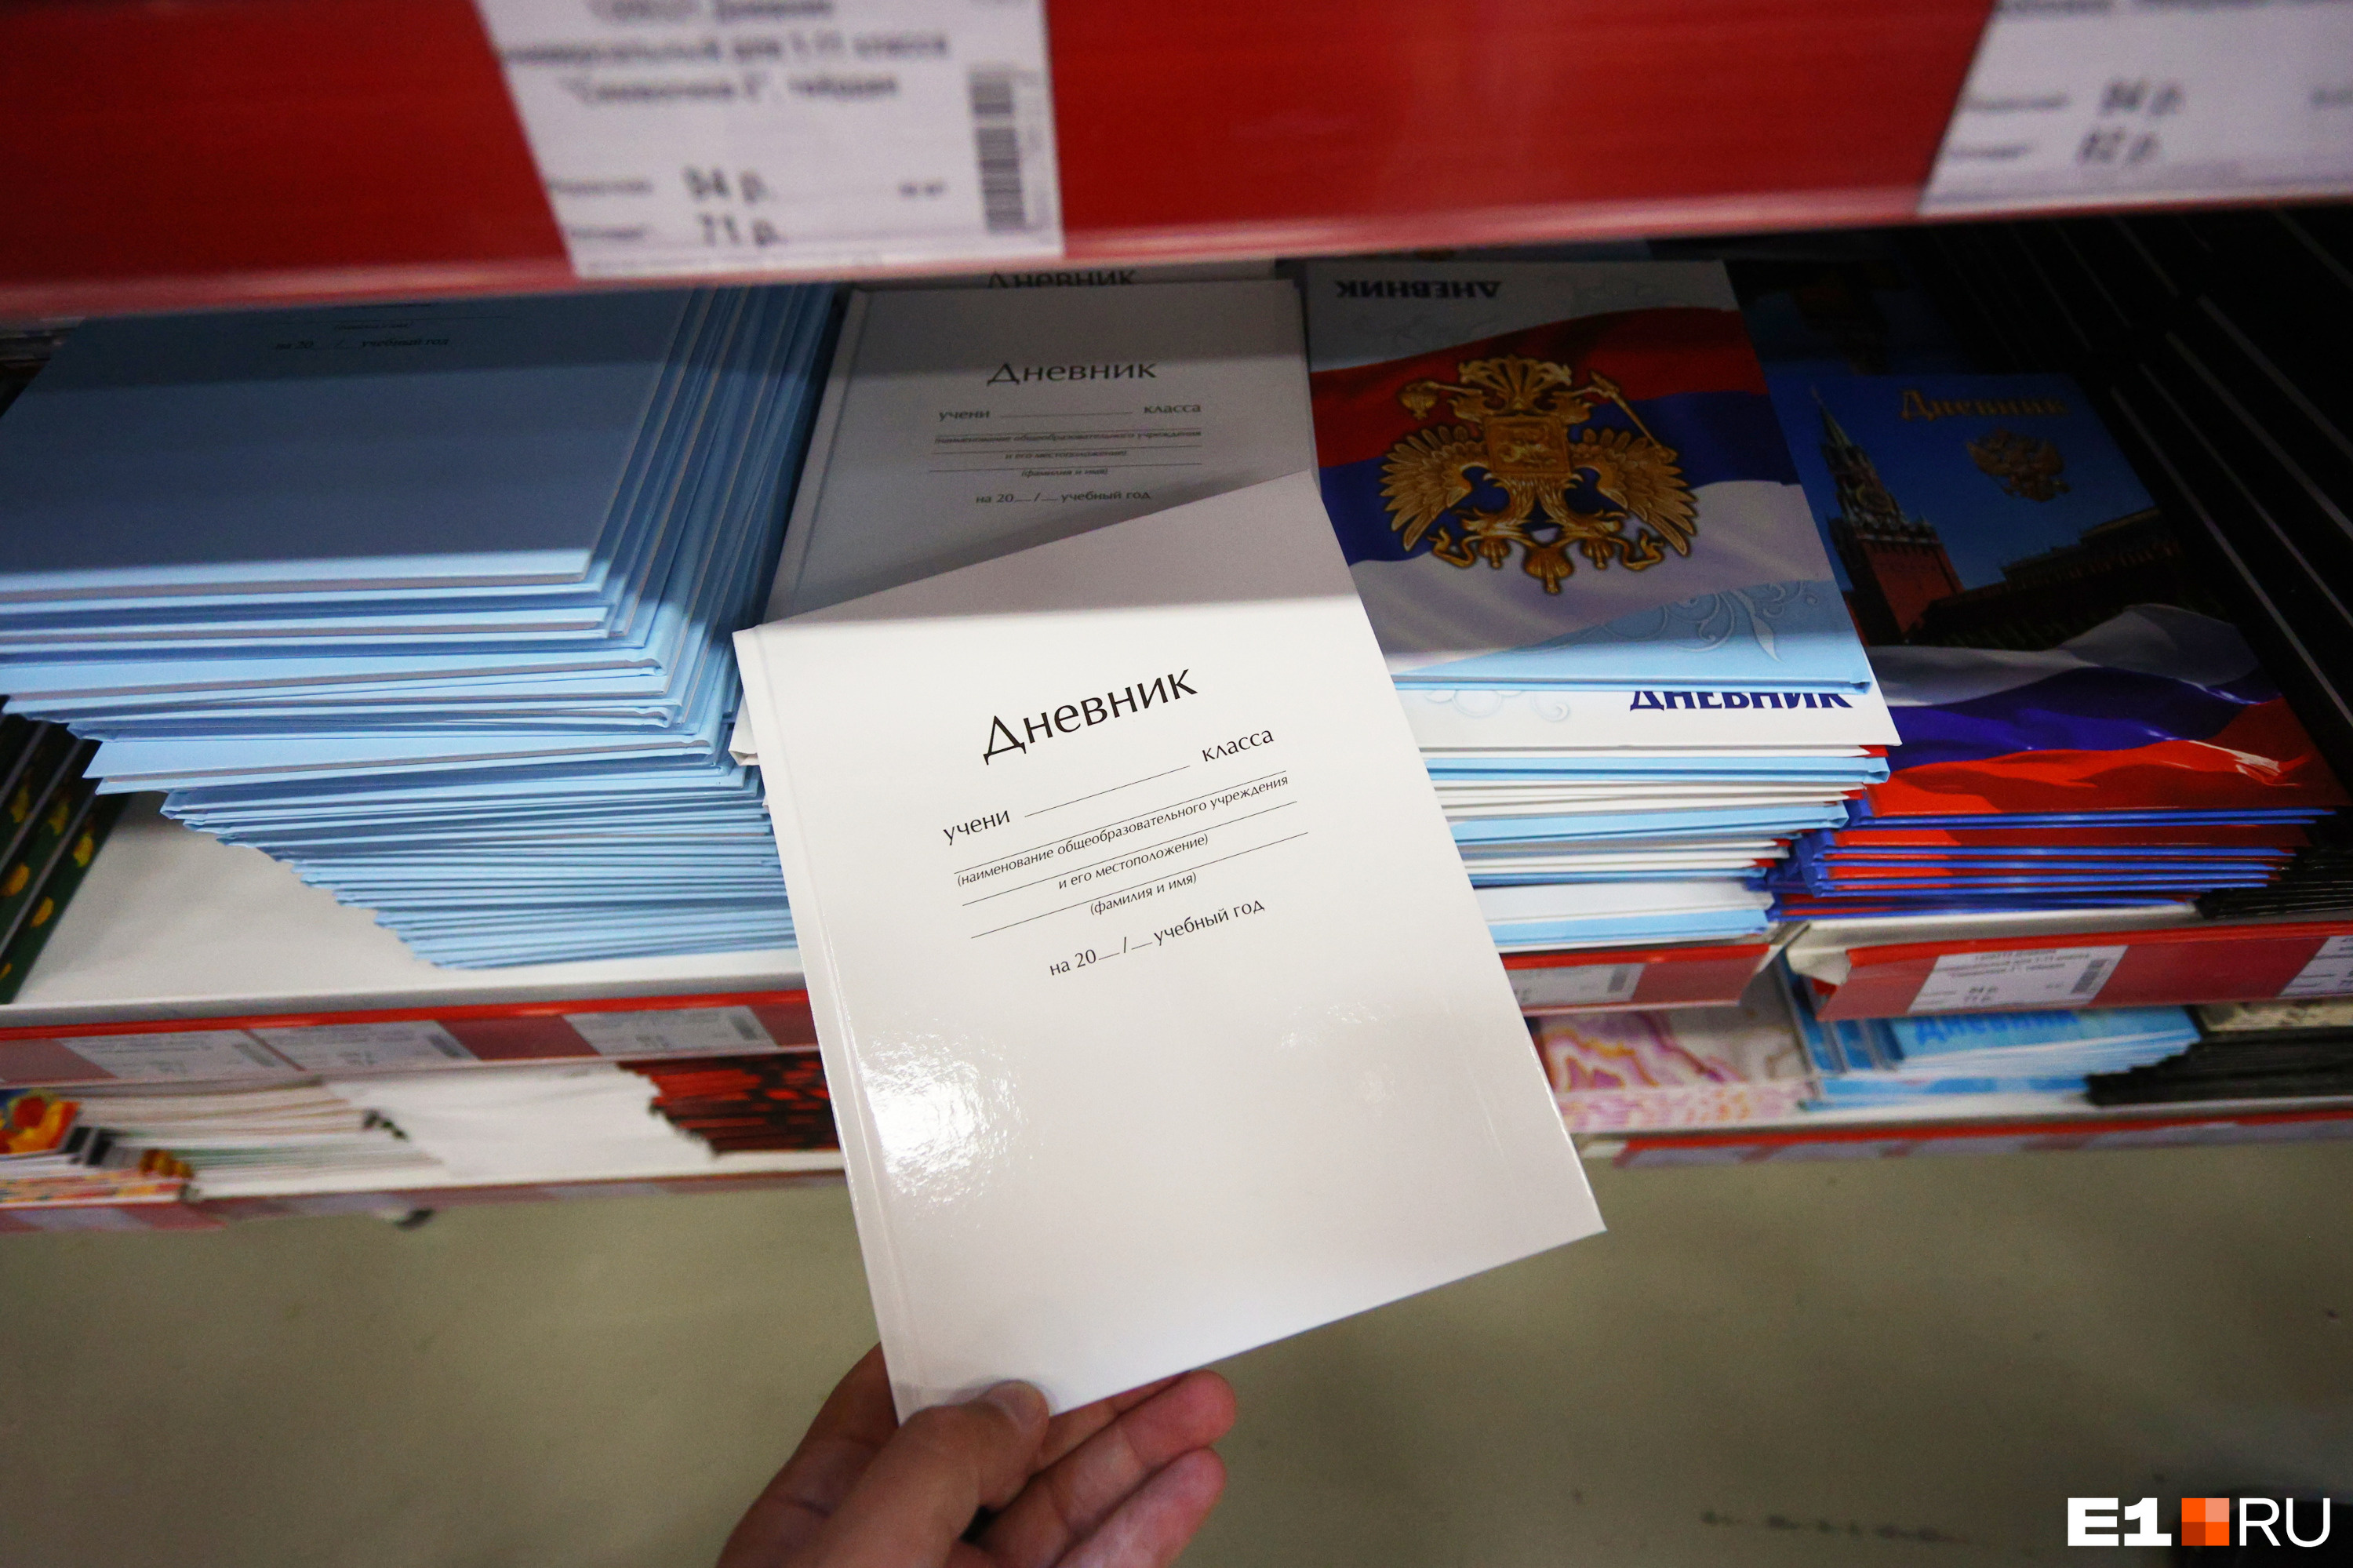 Самый обычный дневник с белой обложкой можно купить за 25 рублей